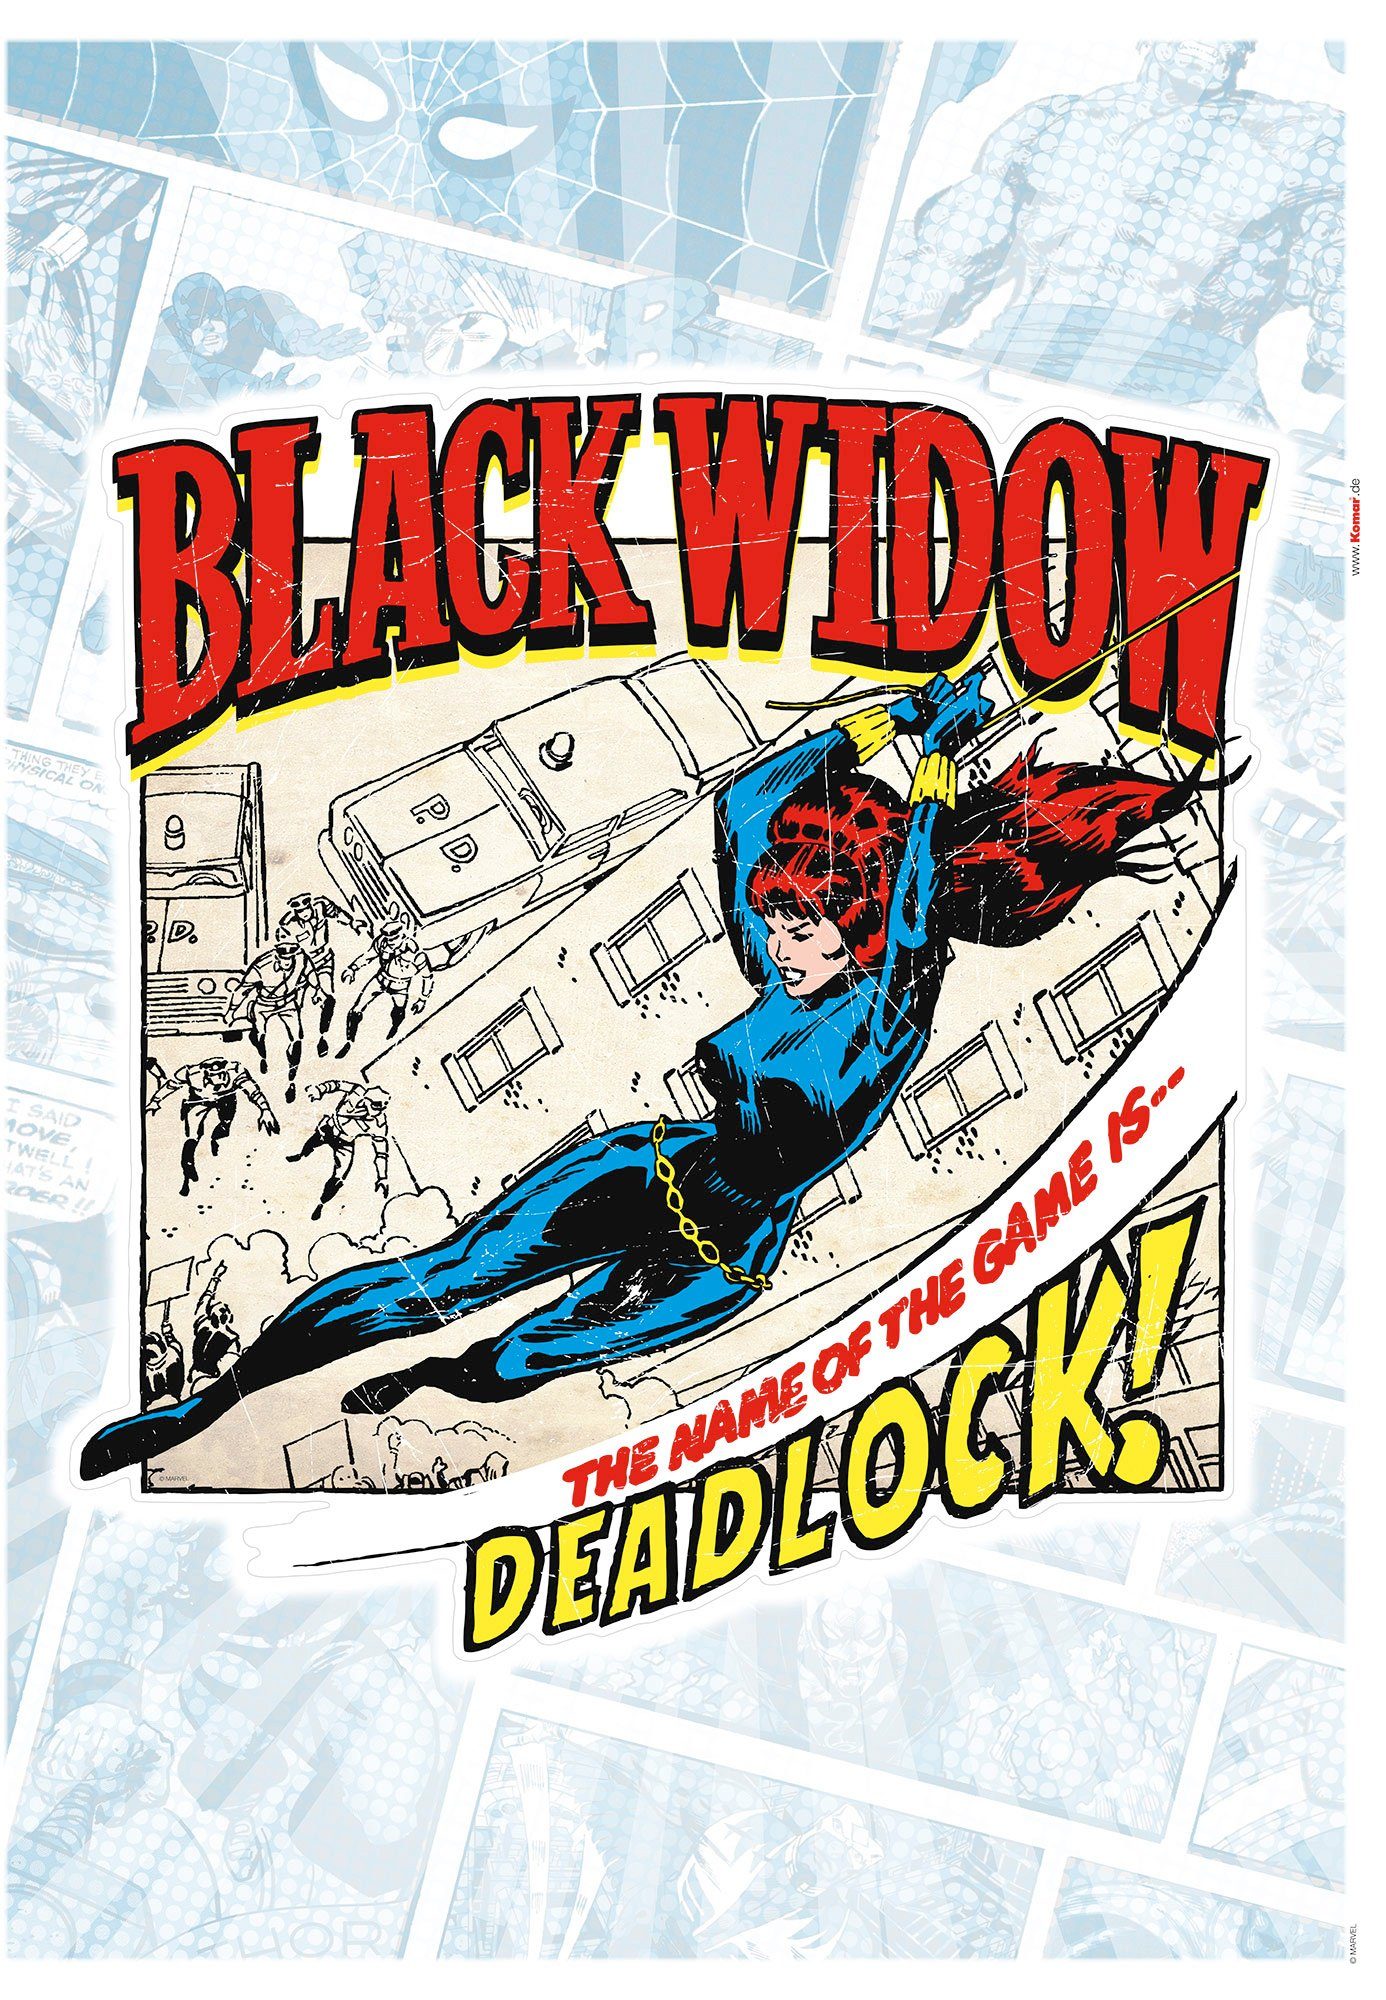 Komar Wandtattoo Black Widow Comic Classic (1 St), 50x70 cm (Breite x Höhe), selbstklebendes Wandtattoo